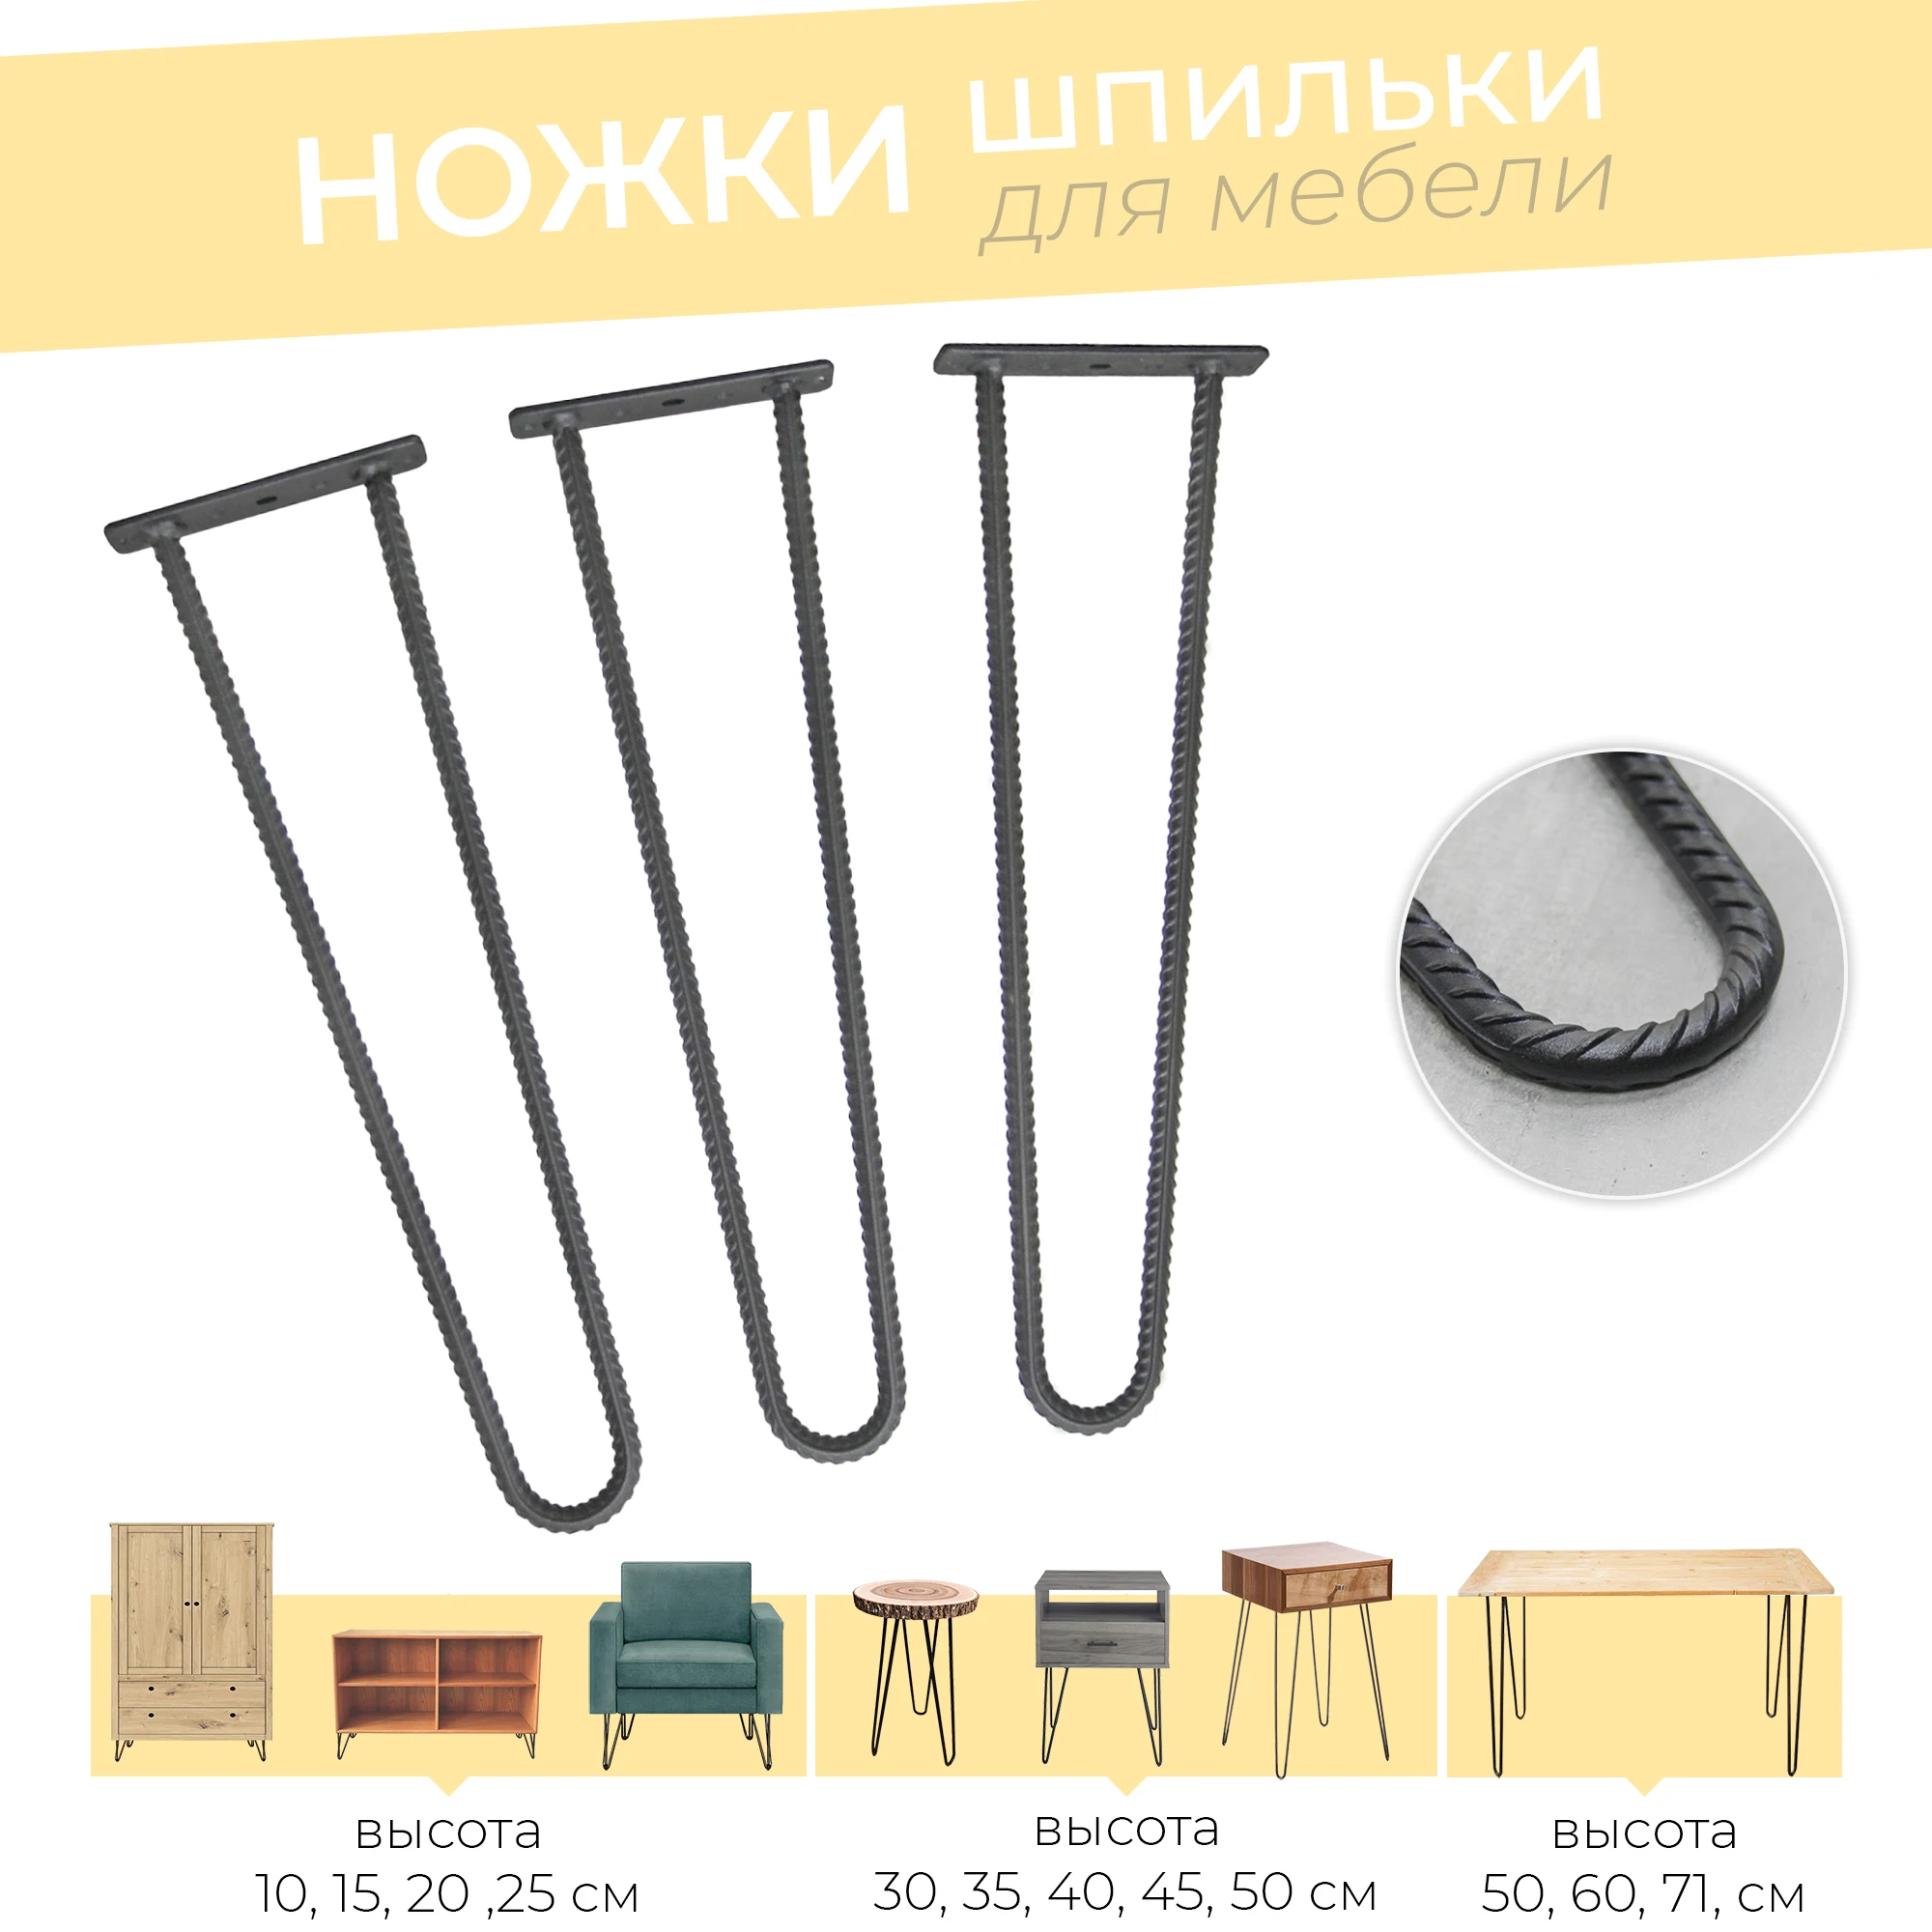 Ножки мебельные для стола шпильки из арматуры двойные высота 10 - 75 см Комплект 3 шт